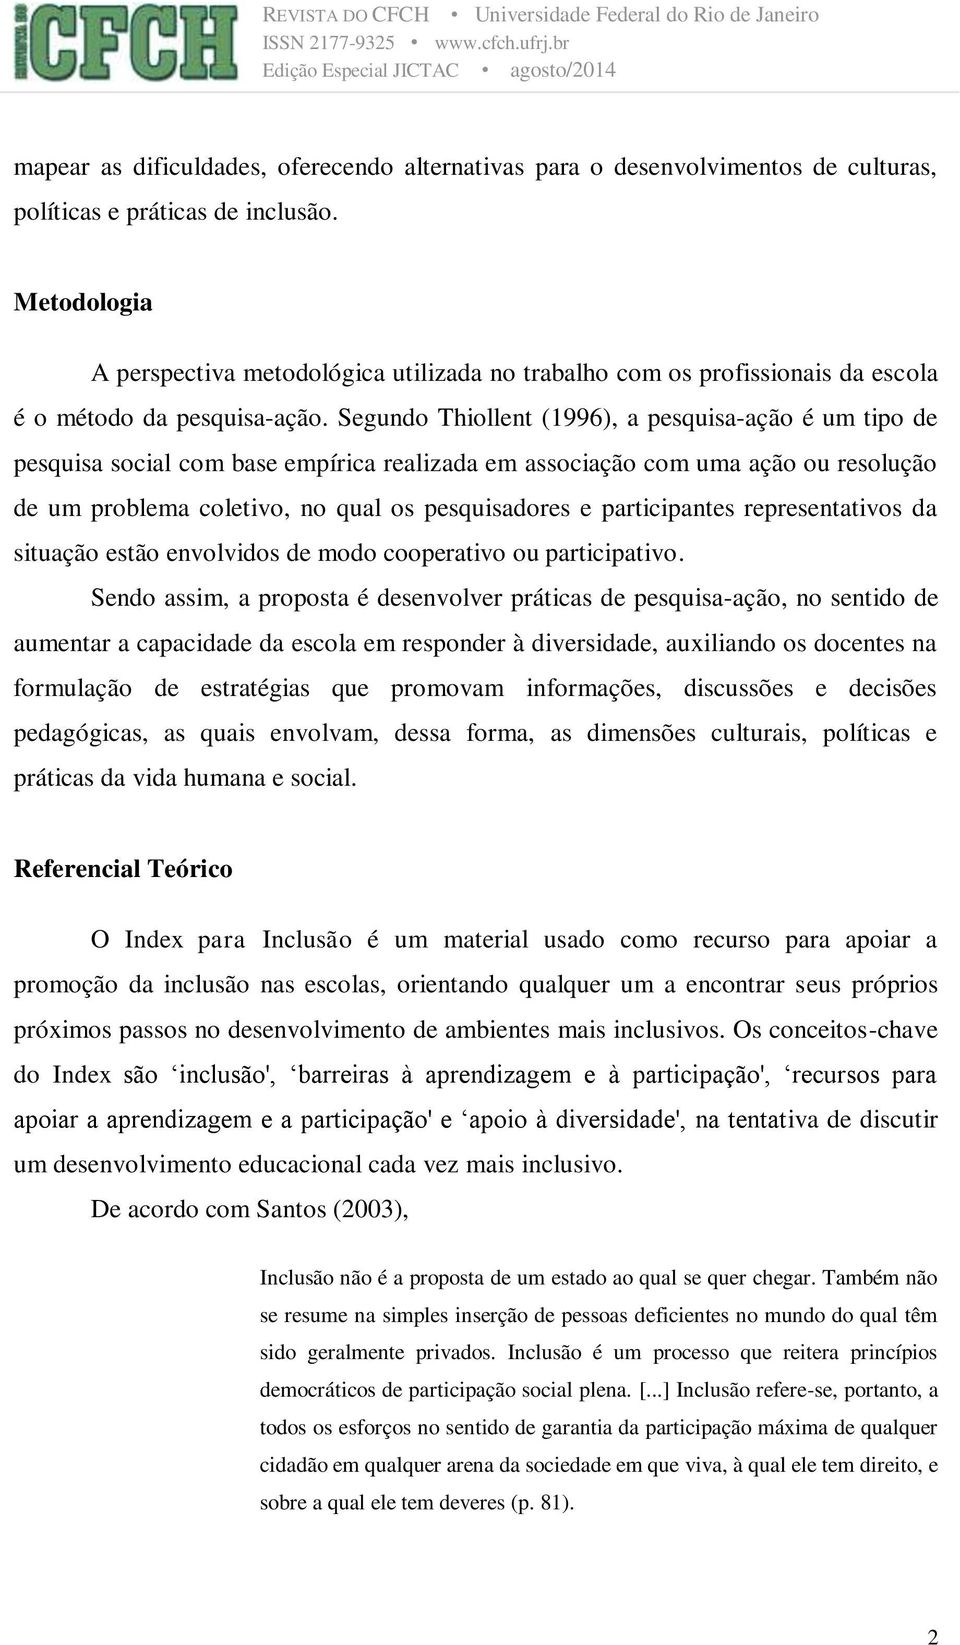 Segundo Thiollent (1996), a pesquisa-ação é um tipo de pesquisa social com base empírica realizada em associação com uma ação ou resolução de um problema coletivo, no qual os pesquisadores e